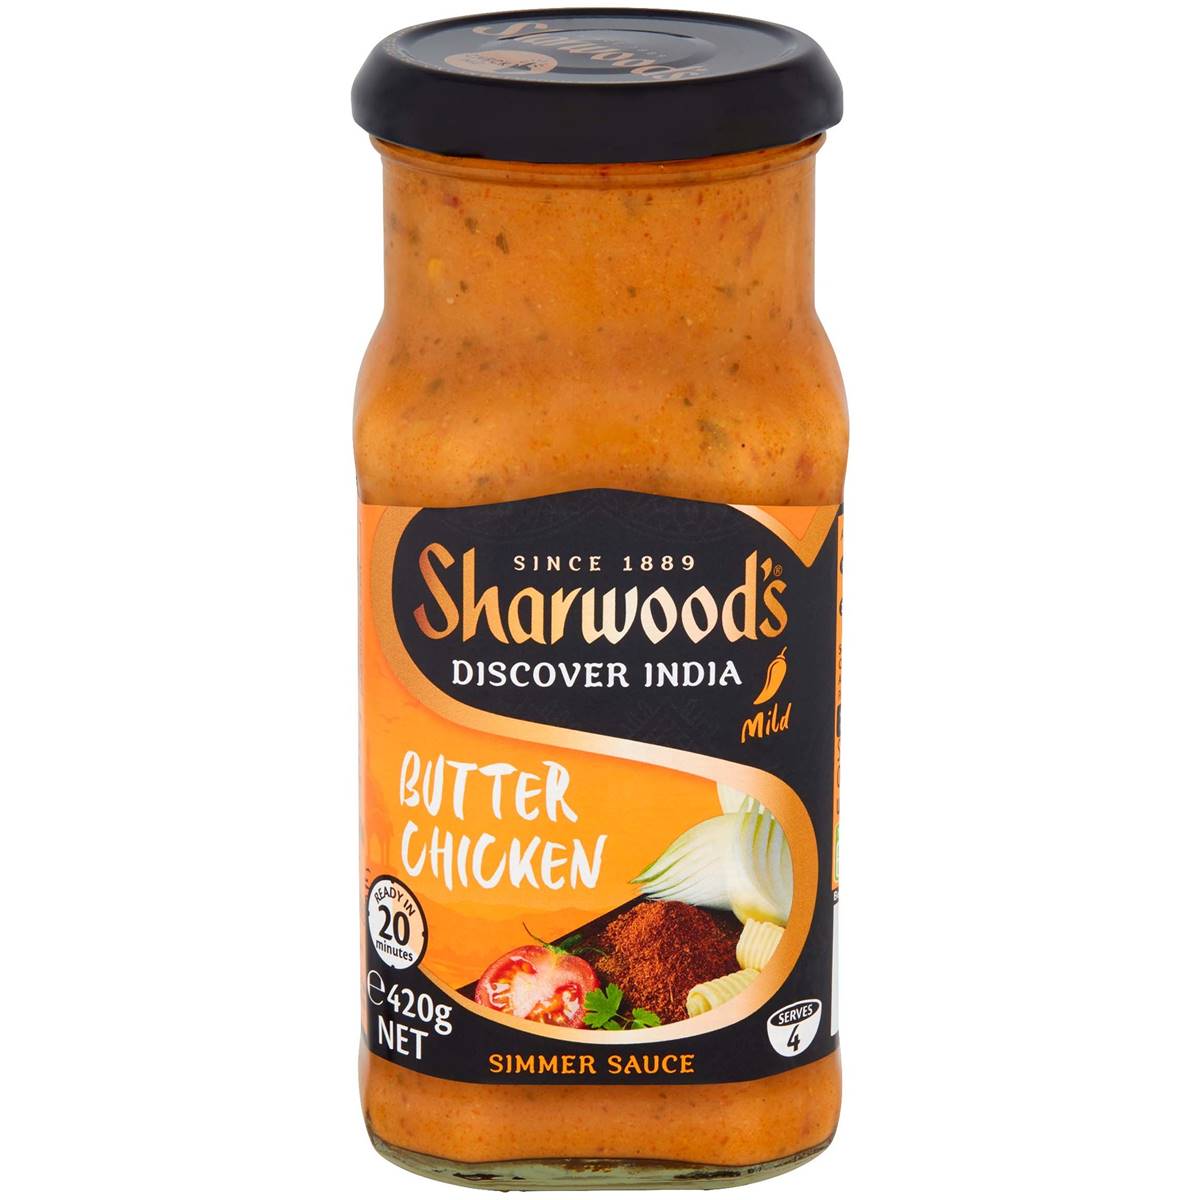 Sharwood's Simmer Sauce Butter Chicken 420g